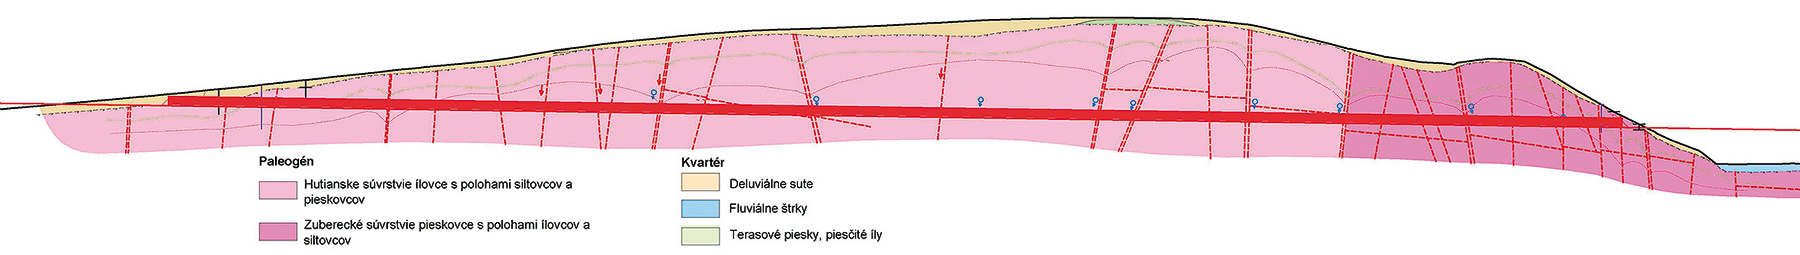 Obr. 1 Geologický pozdĺžny profil pravej tunelovej rúry (PTR) tunela Bikoš